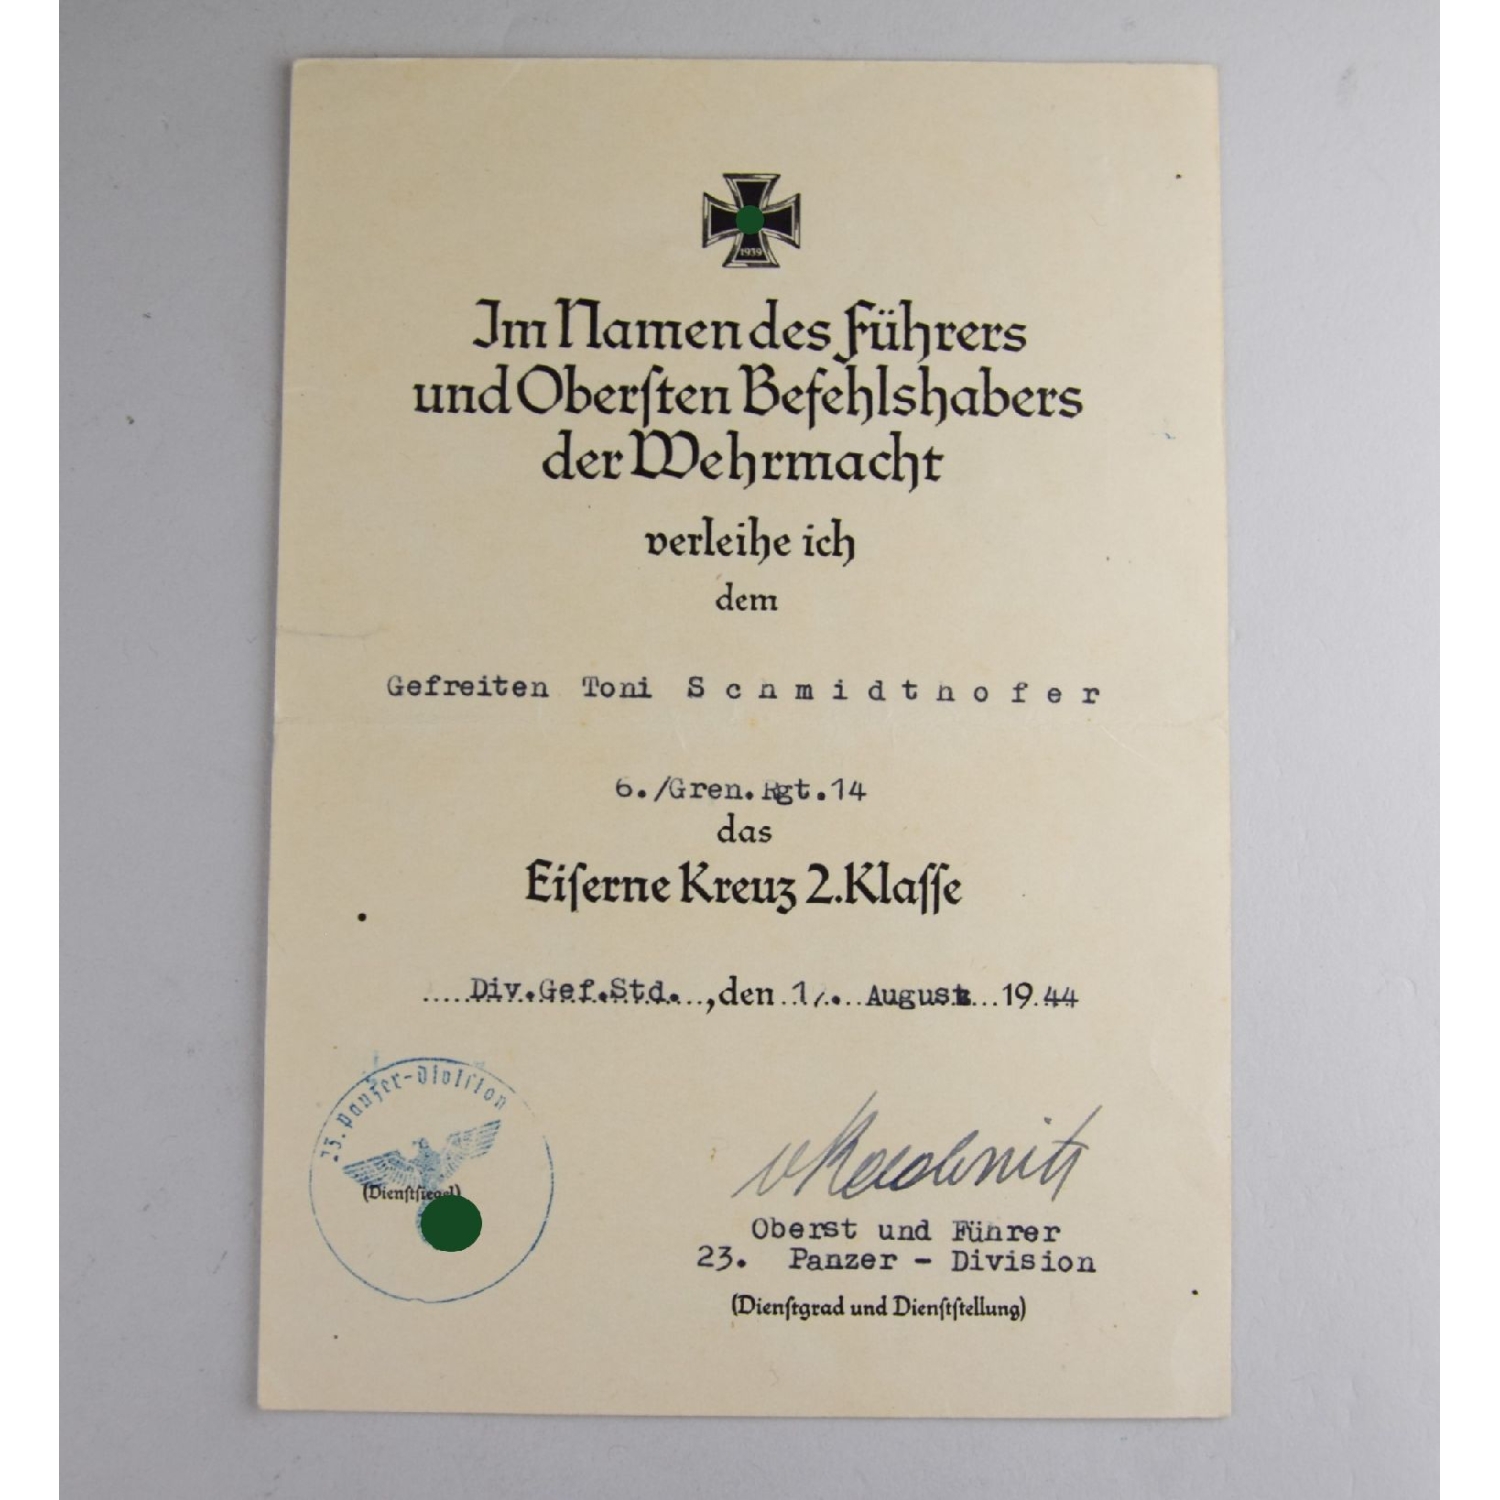 Nachlass eines Gefreiten der Wehrmacht mit EK2 Urkunde und Sterbebild 6./Gren. Rgt. 14